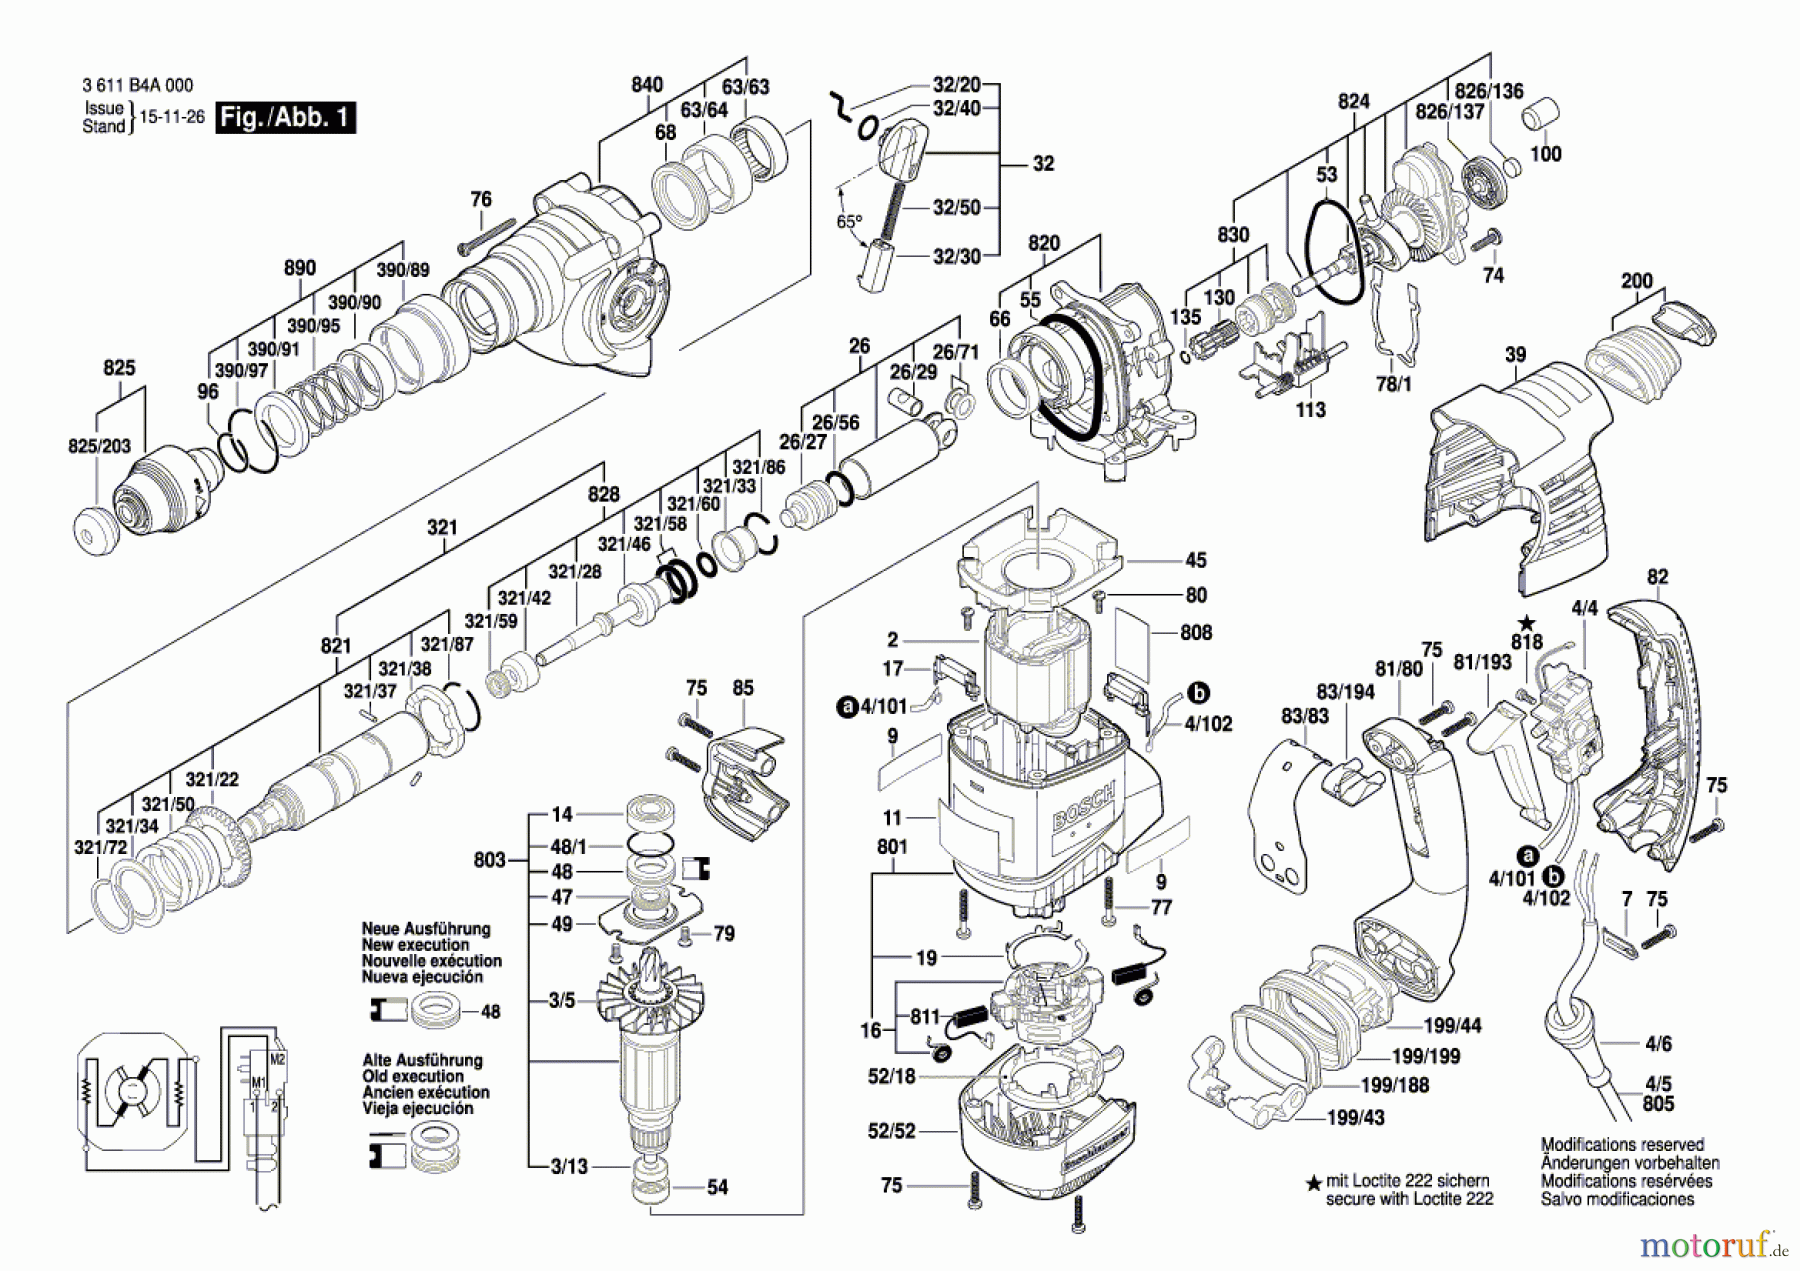  Bosch Werkzeug Bohrhammer GBH 3000 Seite 1